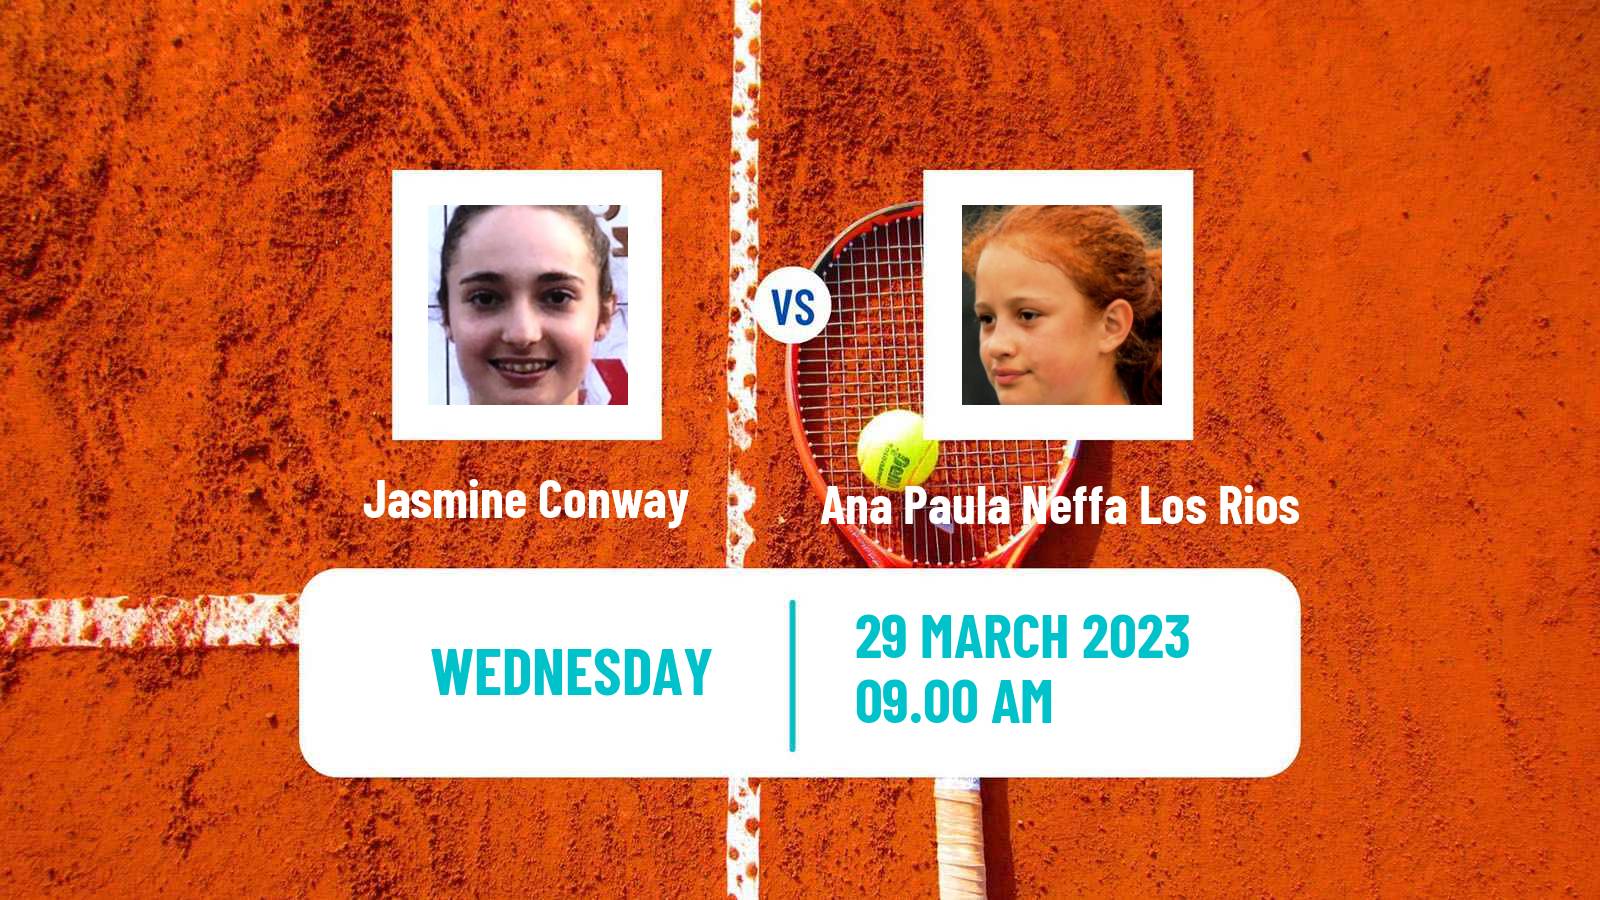 Tennis ITF Tournaments Jasmine Conway - Ana Paula Neffa Los Rios